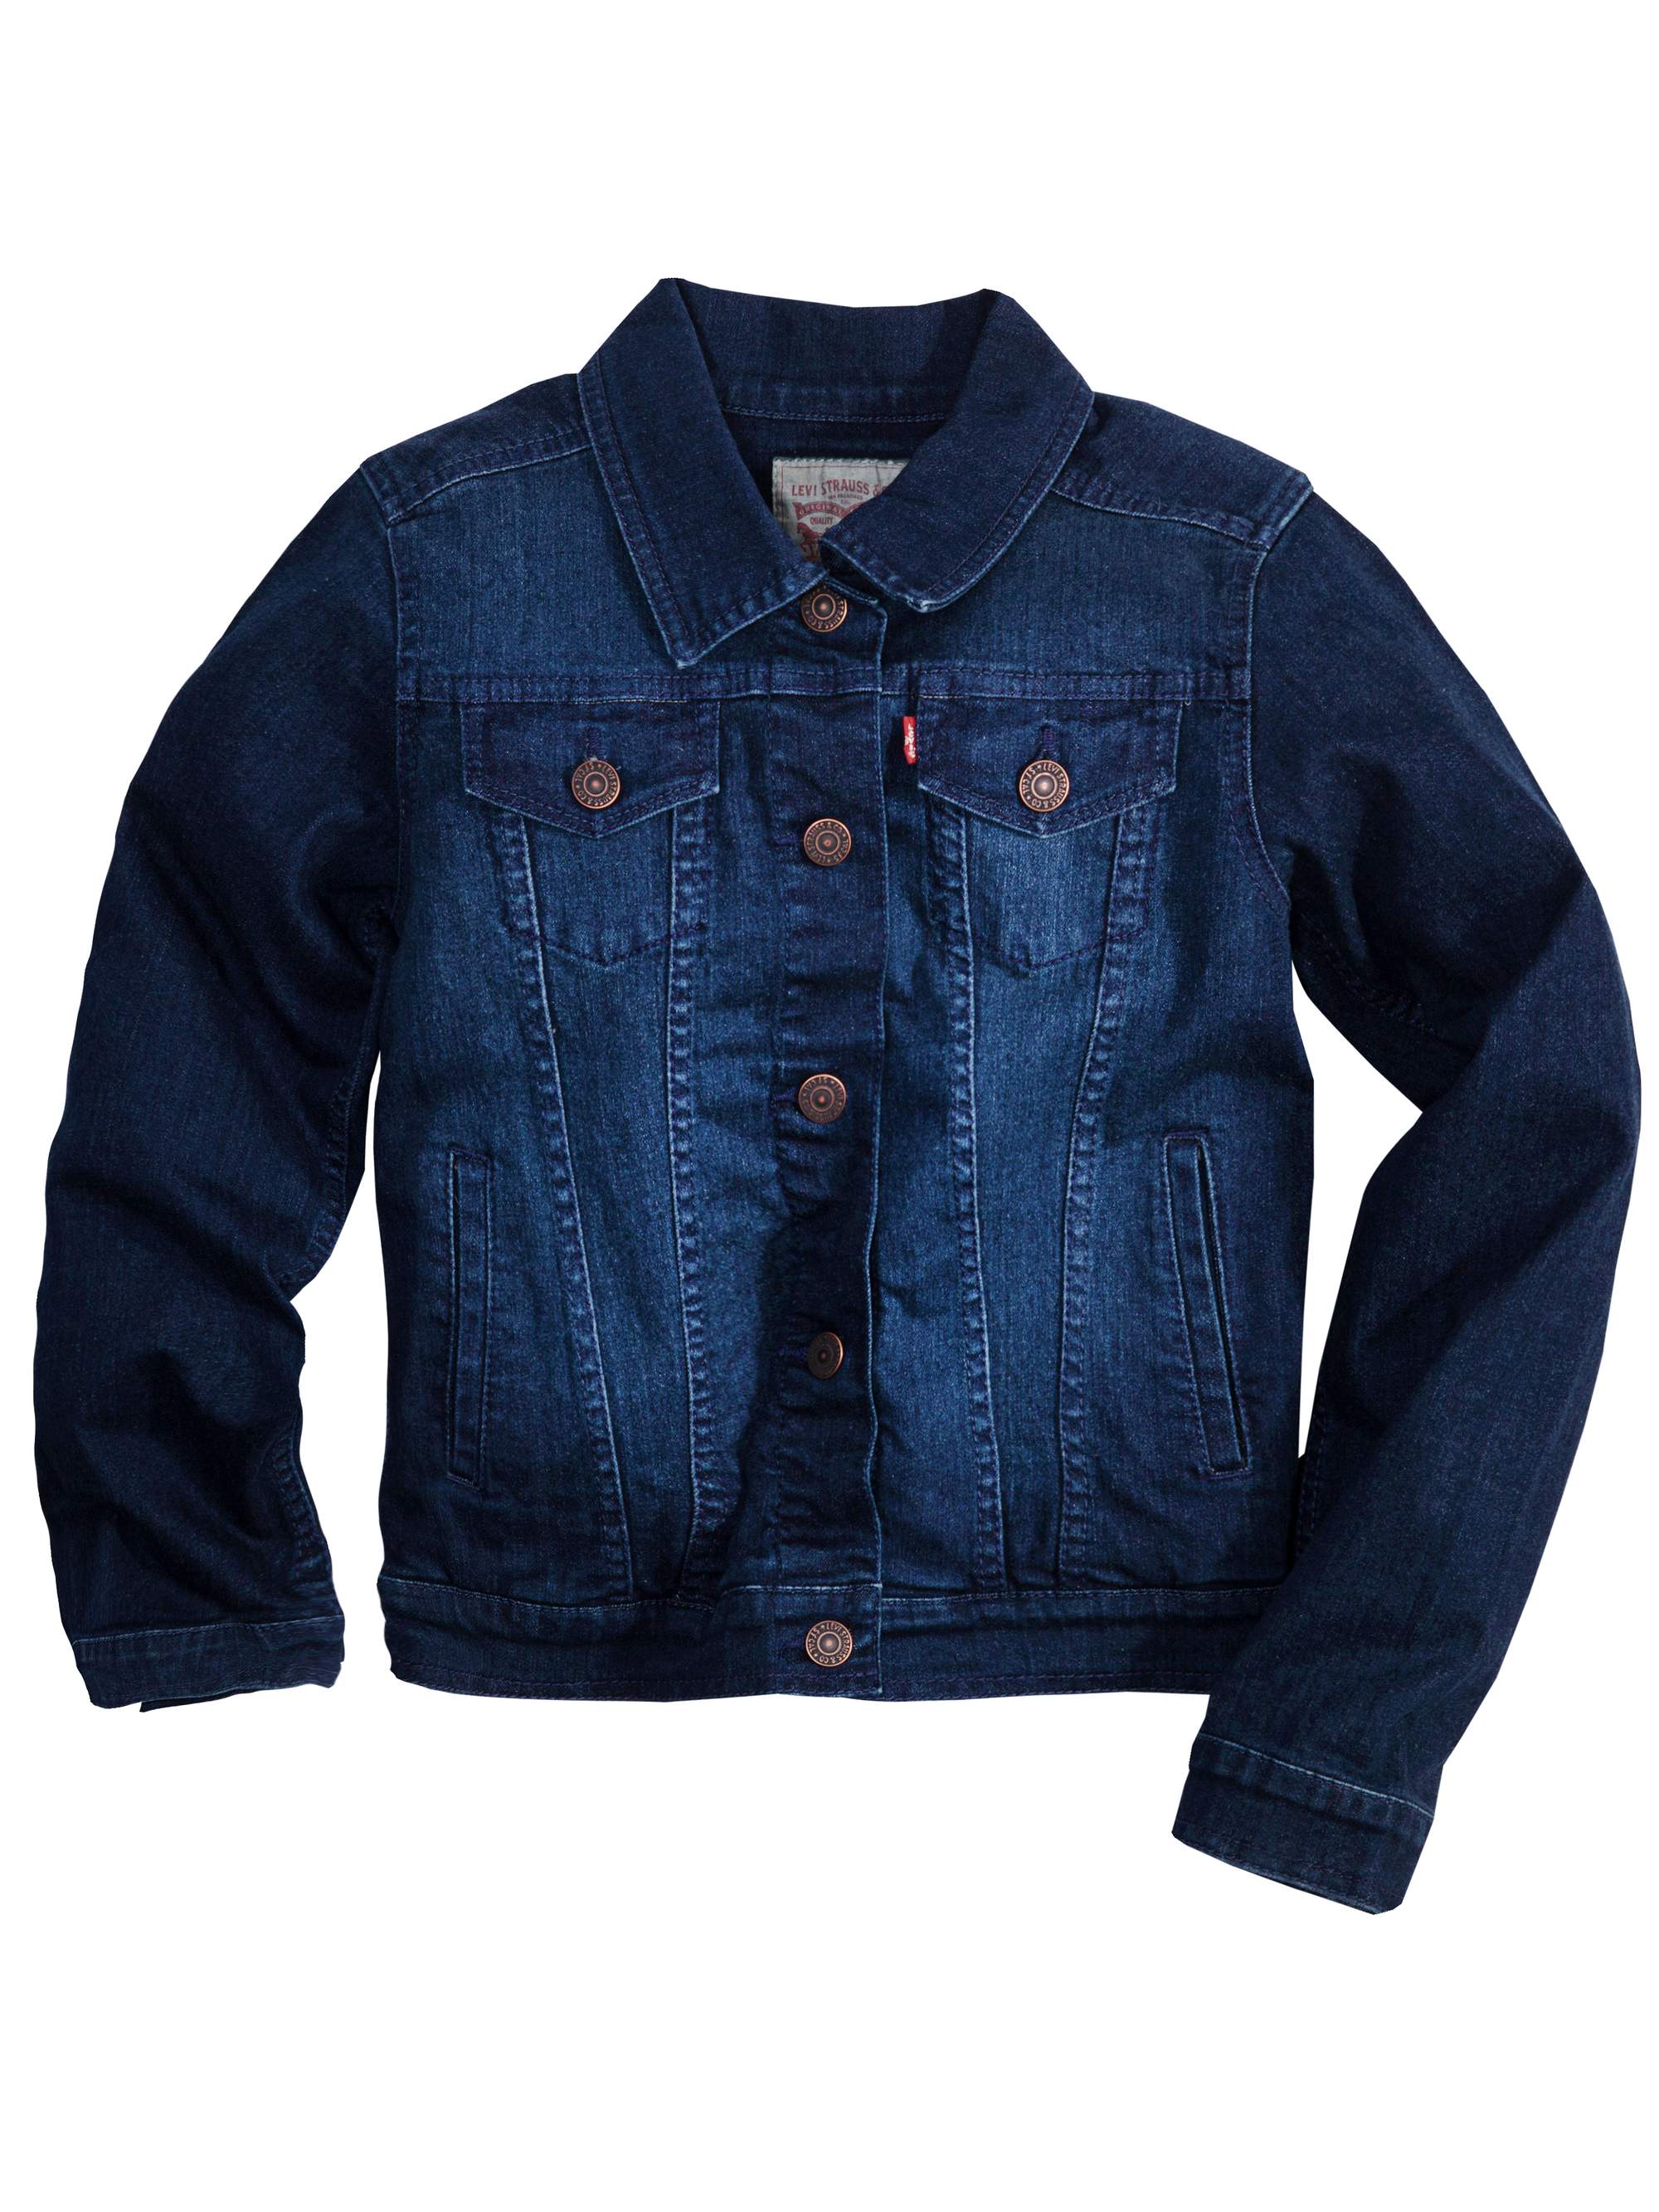 Levi's Girls' Trucker Jacket, Sizes 4-16 - image 1 of 2